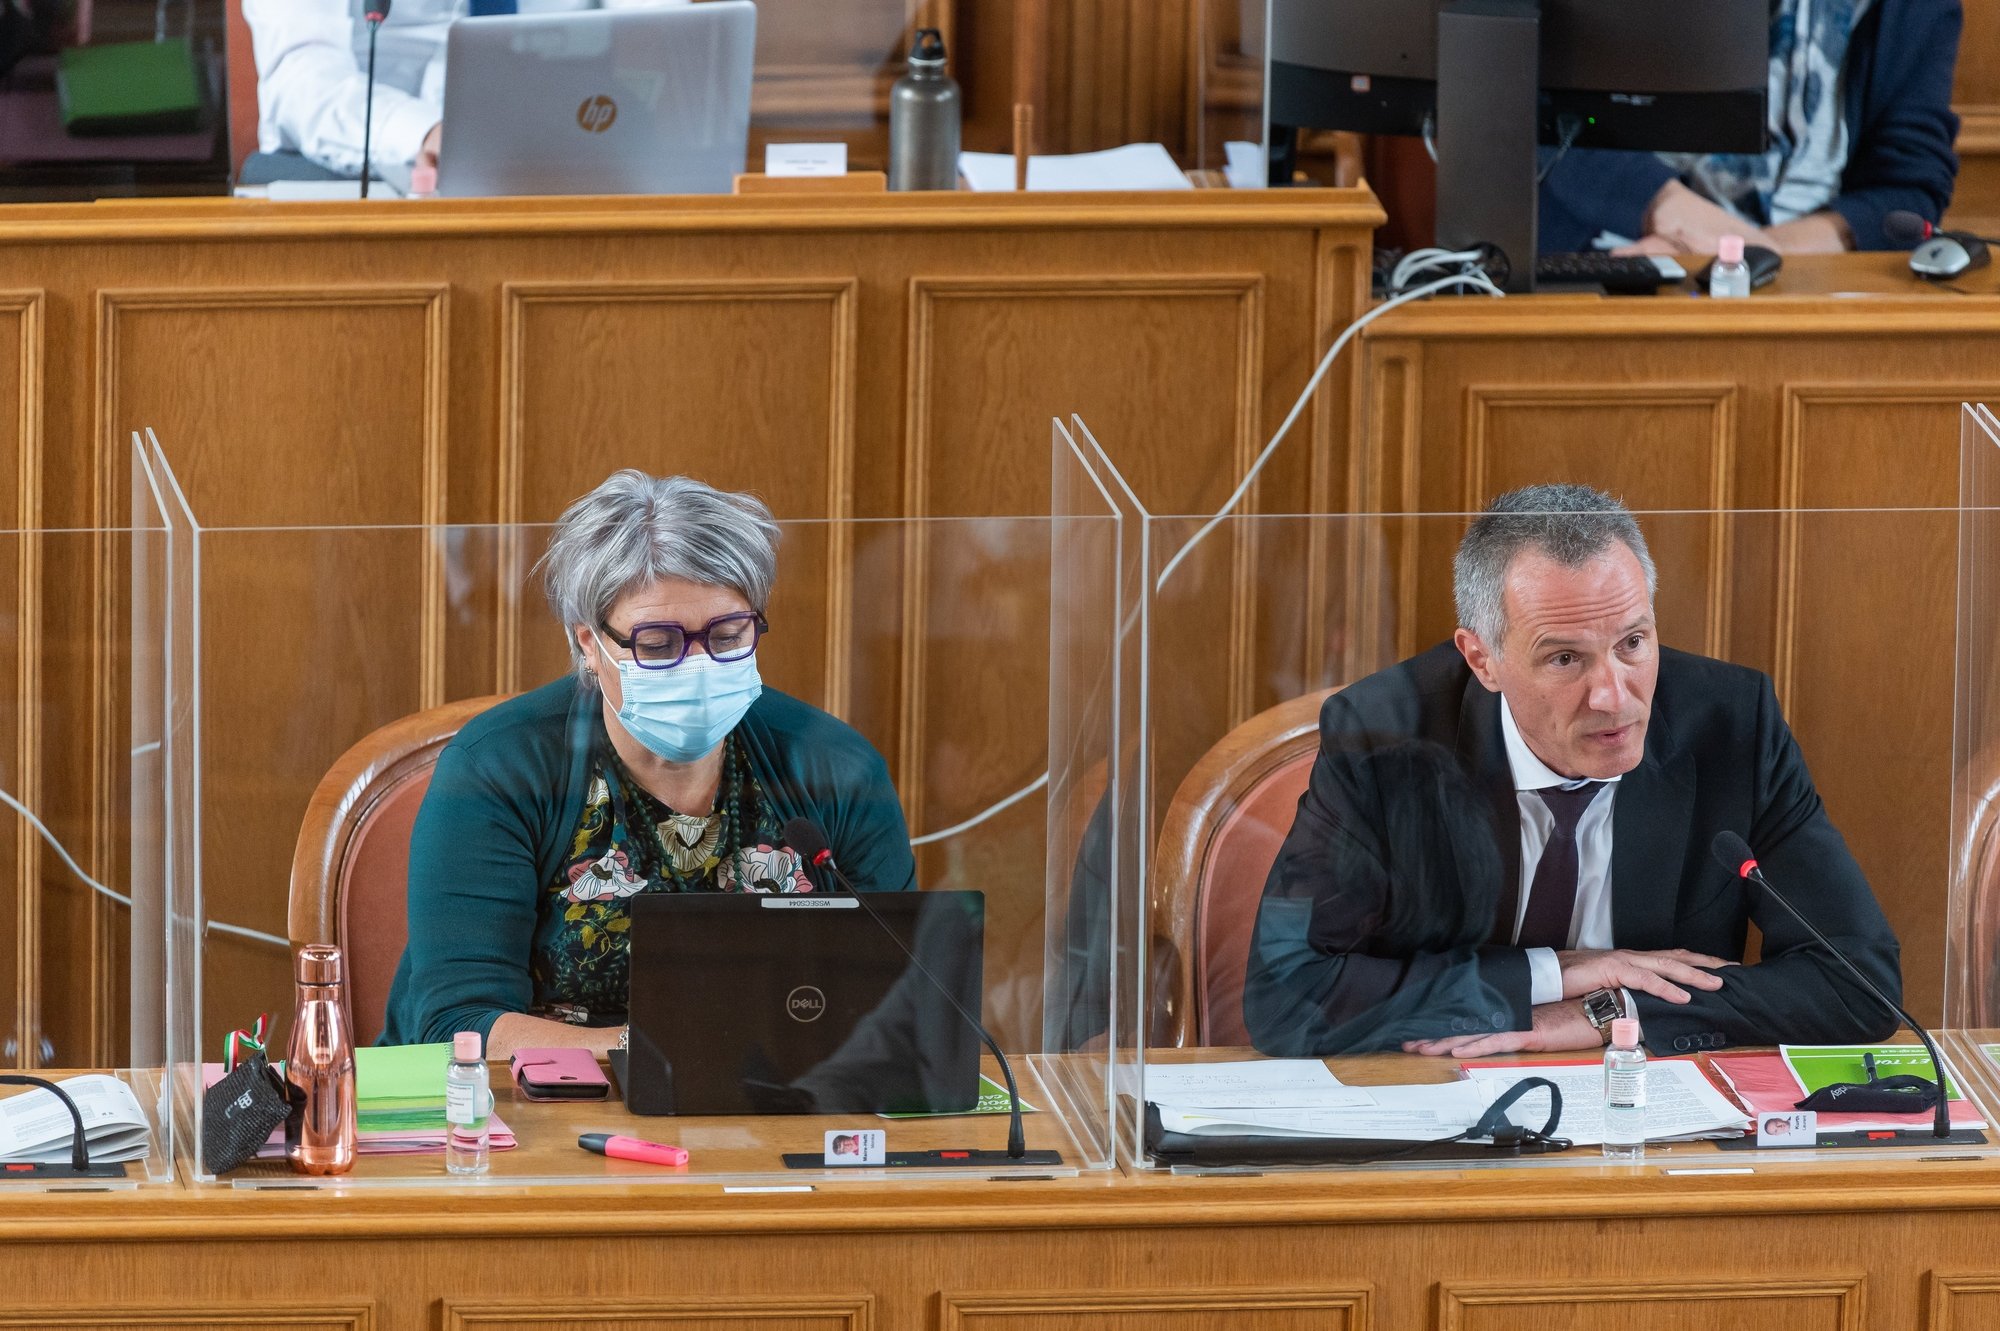 La présidente du gouvernement neuchâtelois, Monika Maire-Hefti, et le ministre des finances et de la santé, Laurent Kurth.